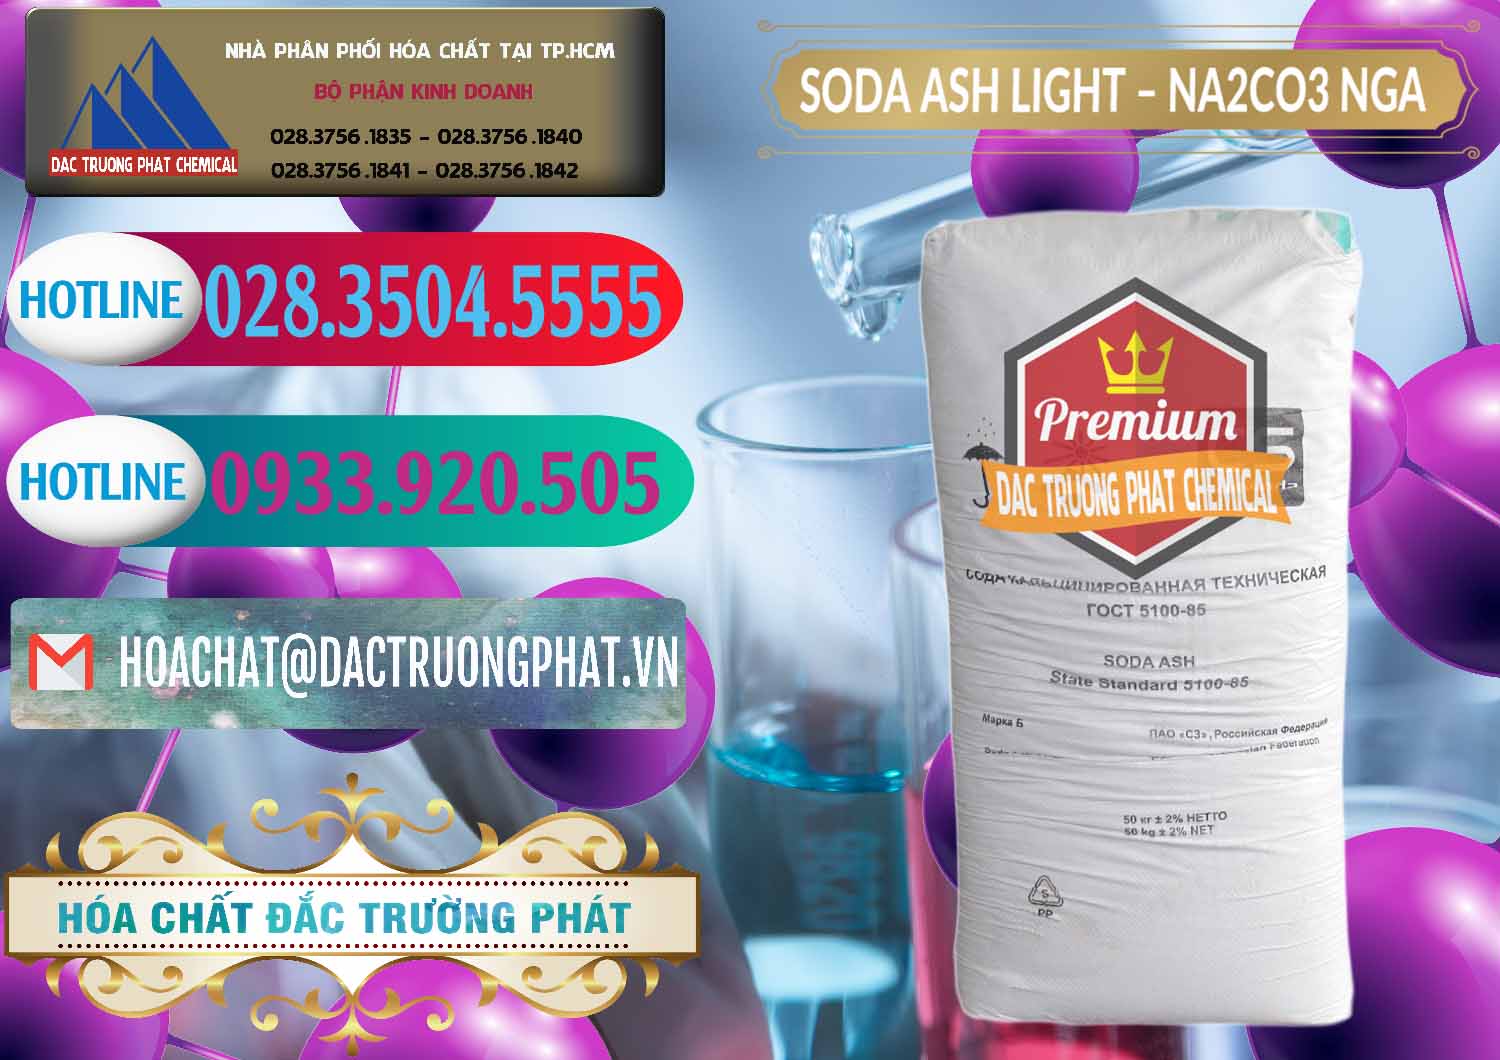 Cty kinh doanh và bán Soda Ash Light - NA2CO3 Nga Russia - 0128 - Nơi cung cấp _ kinh doanh hóa chất tại TP.HCM - truongphat.vn